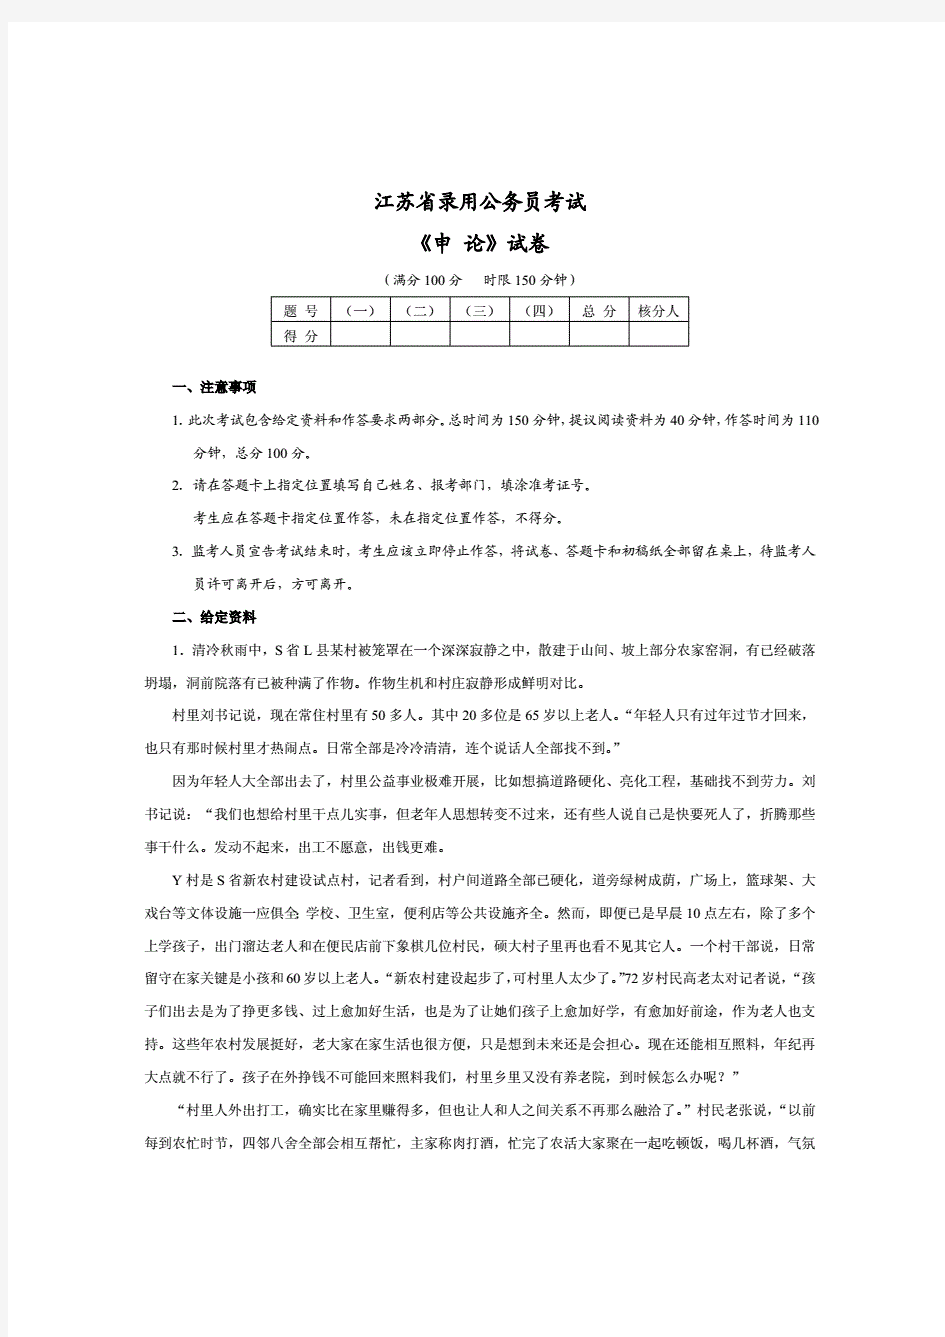 2021年江苏公务员考试申论真题及解析(20210204220920)